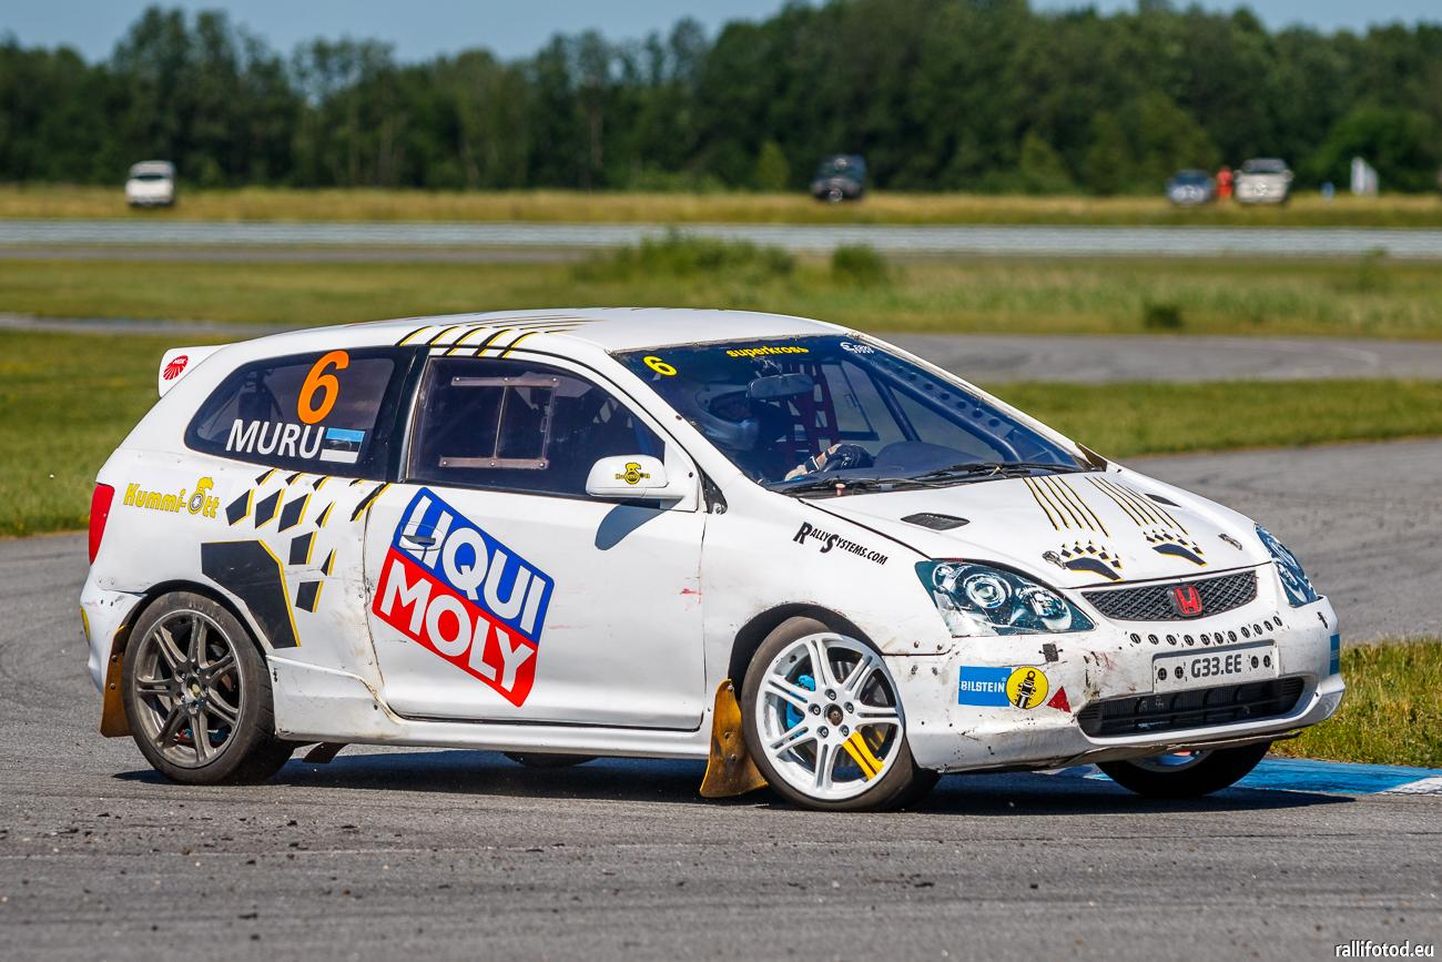 Honda Civicut taltsutav Erki Spordi võidusõitja Marko Andreas Muru alustas Eesti meistrivõistlusi teise kohaga.